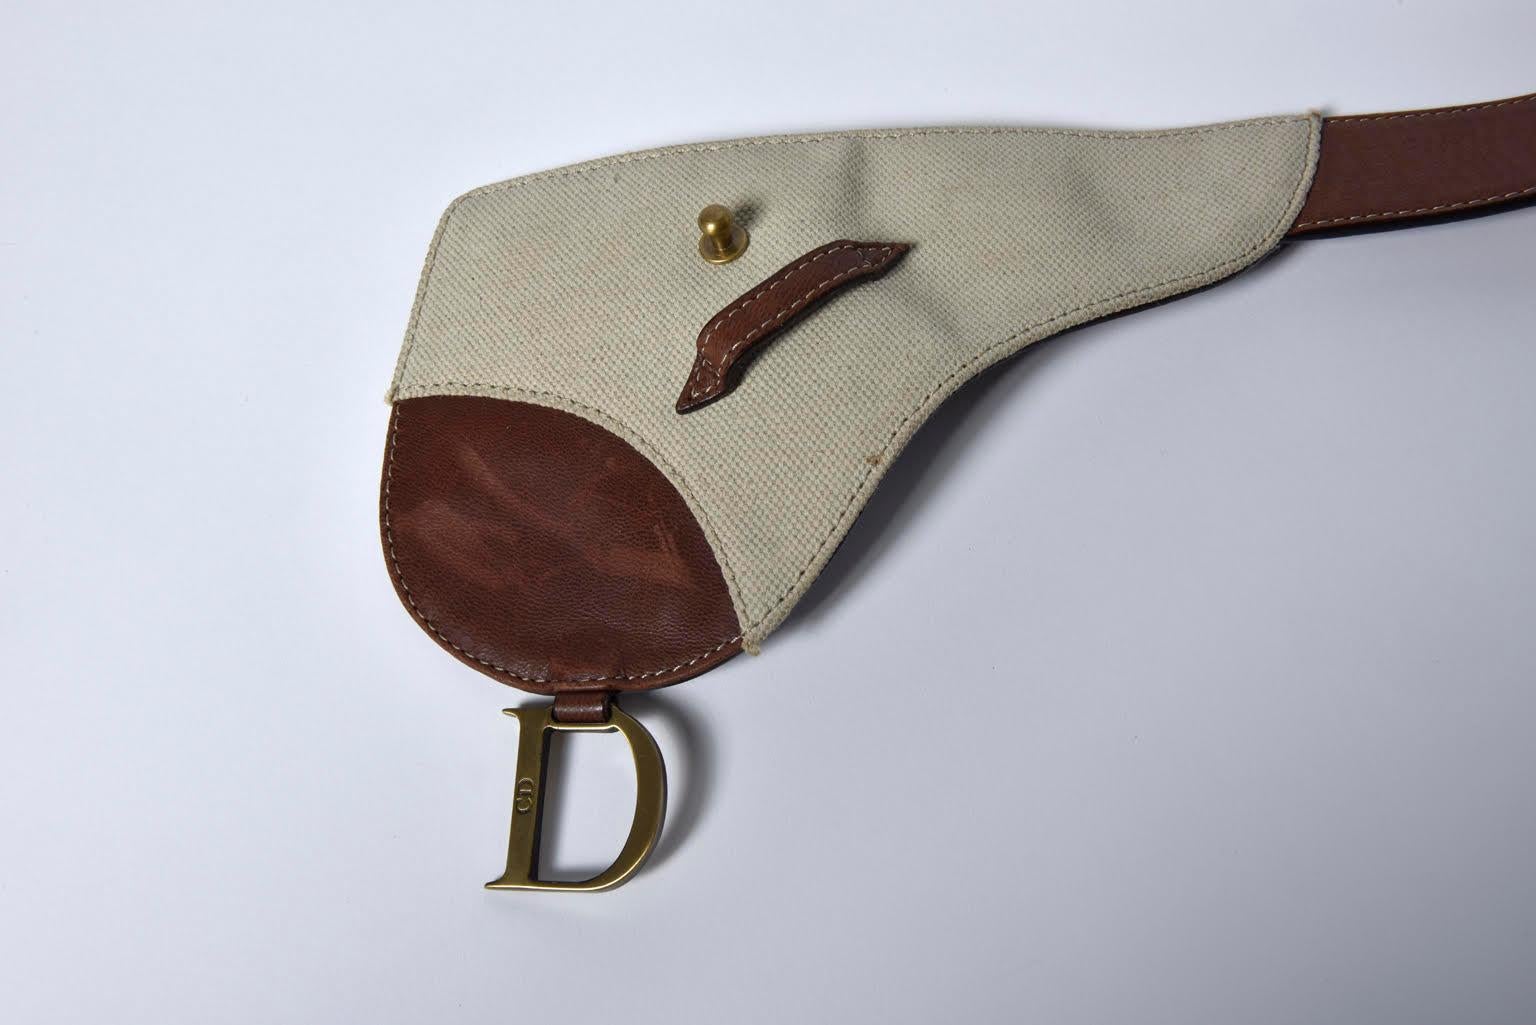 dior saddle belt bag